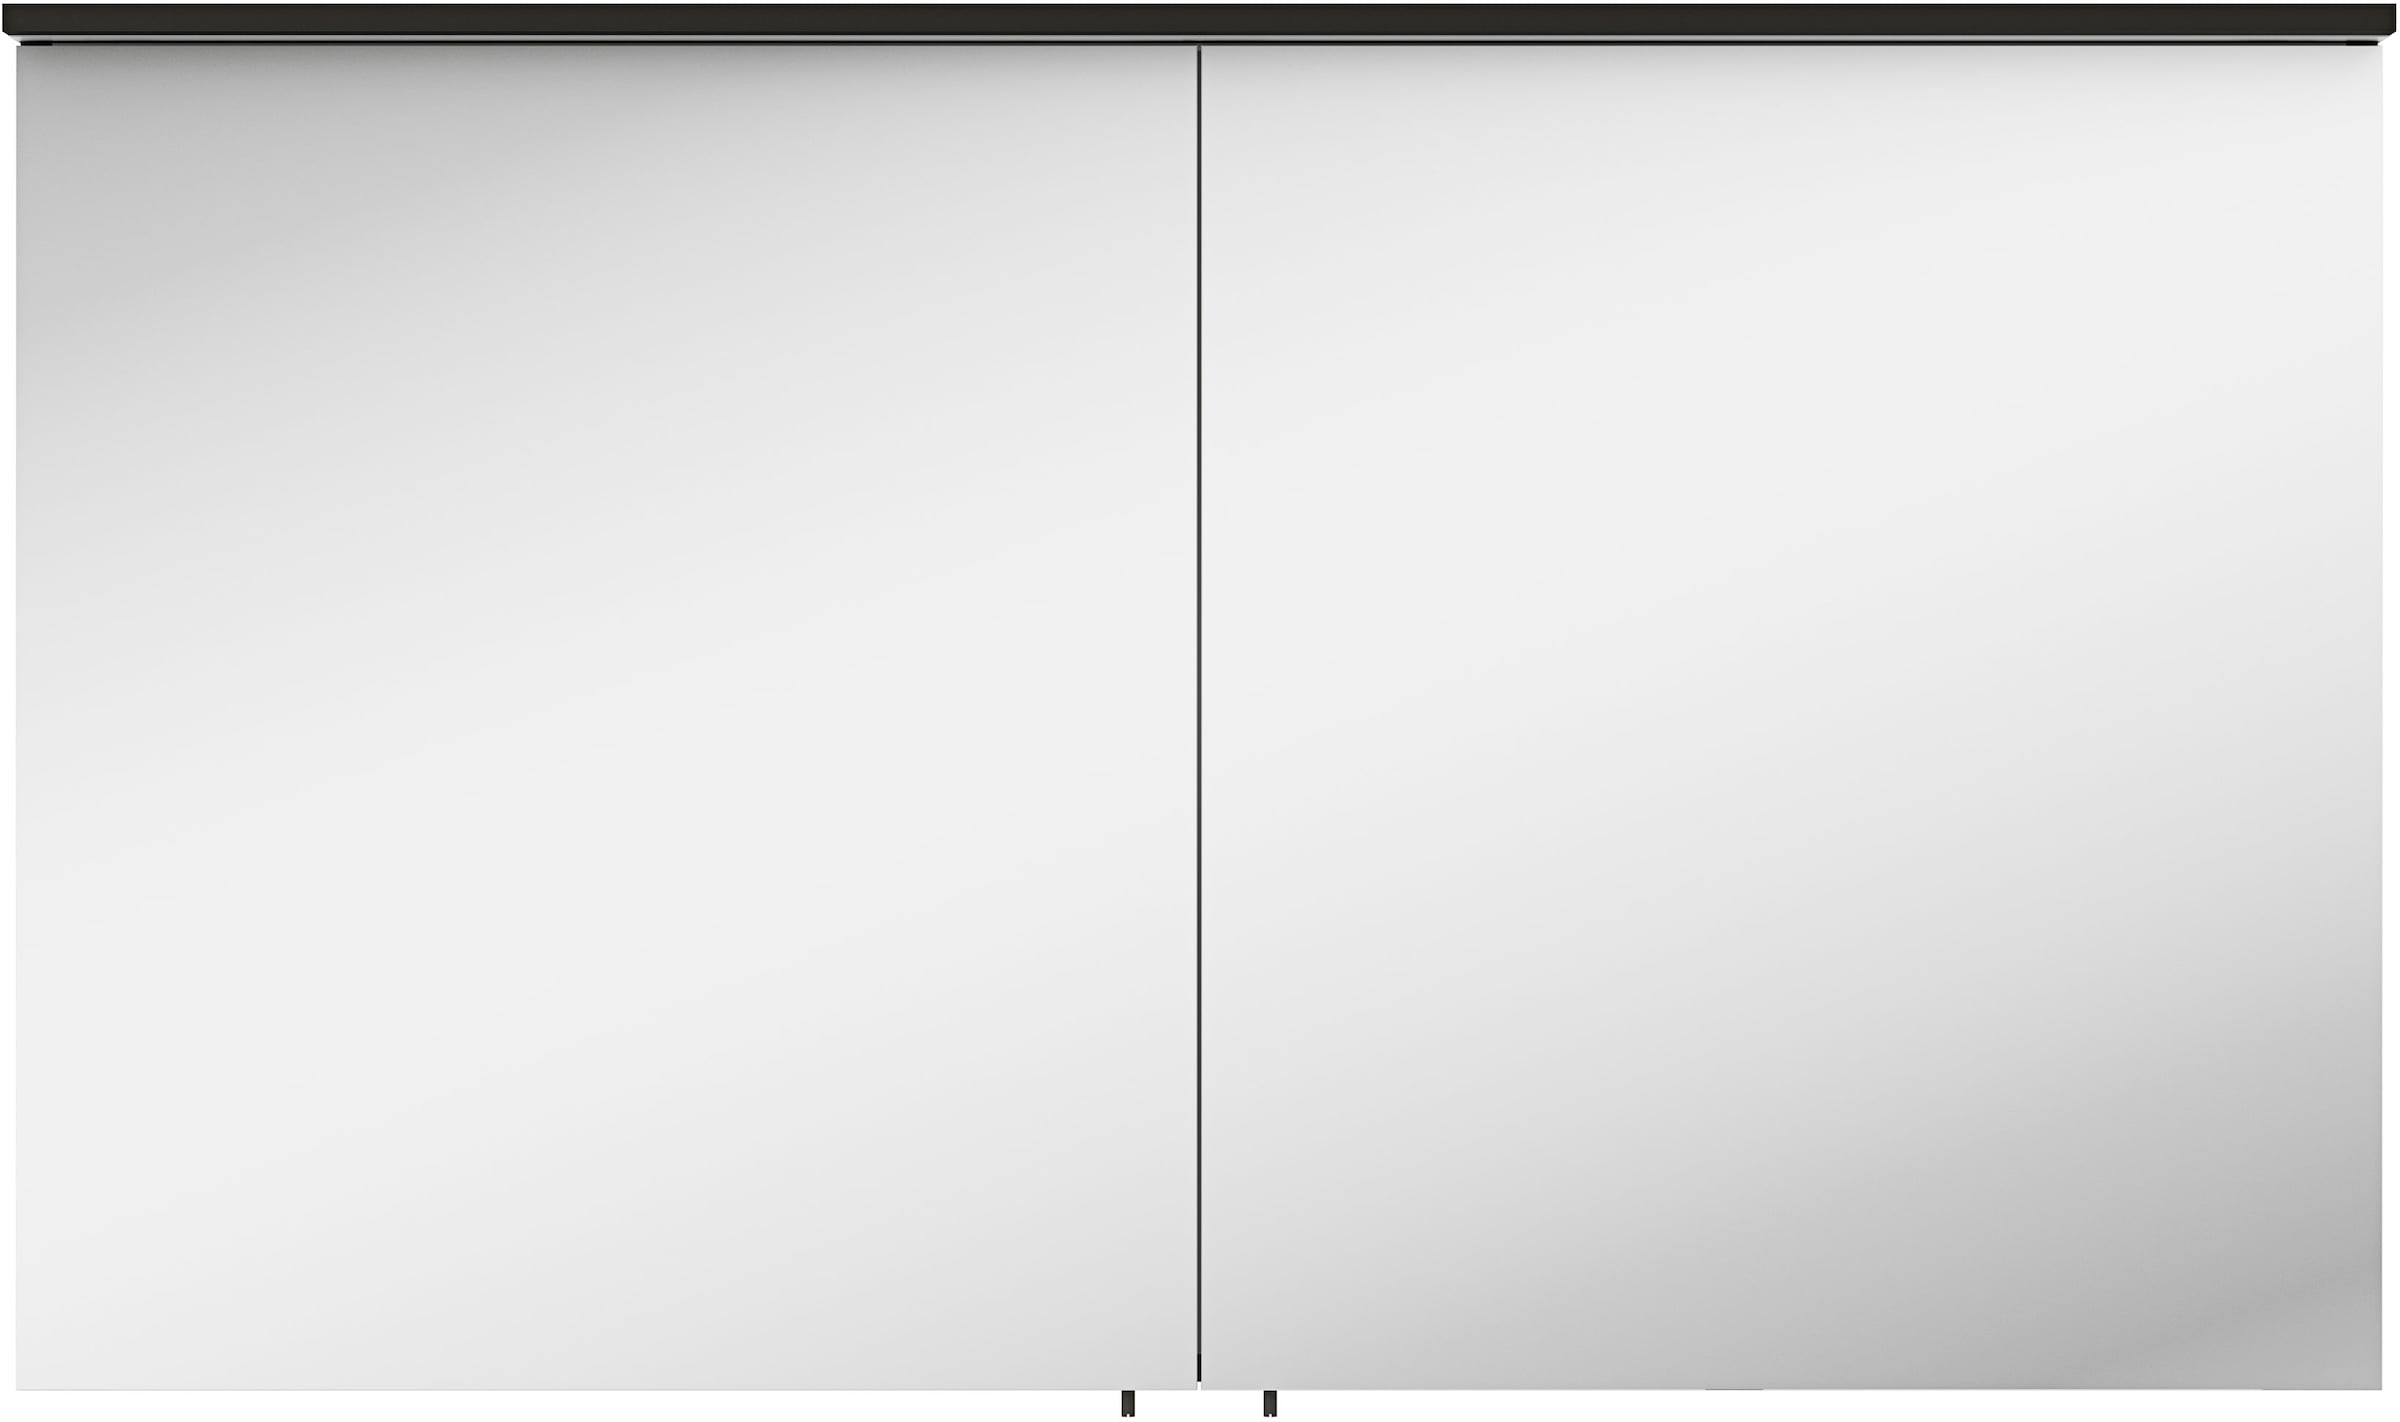 MARLIN Spiegelschrank »3510clarus«, 120 cm breit, Soft-Close-Funktion, inkl. Beleuchtung, vormontiert